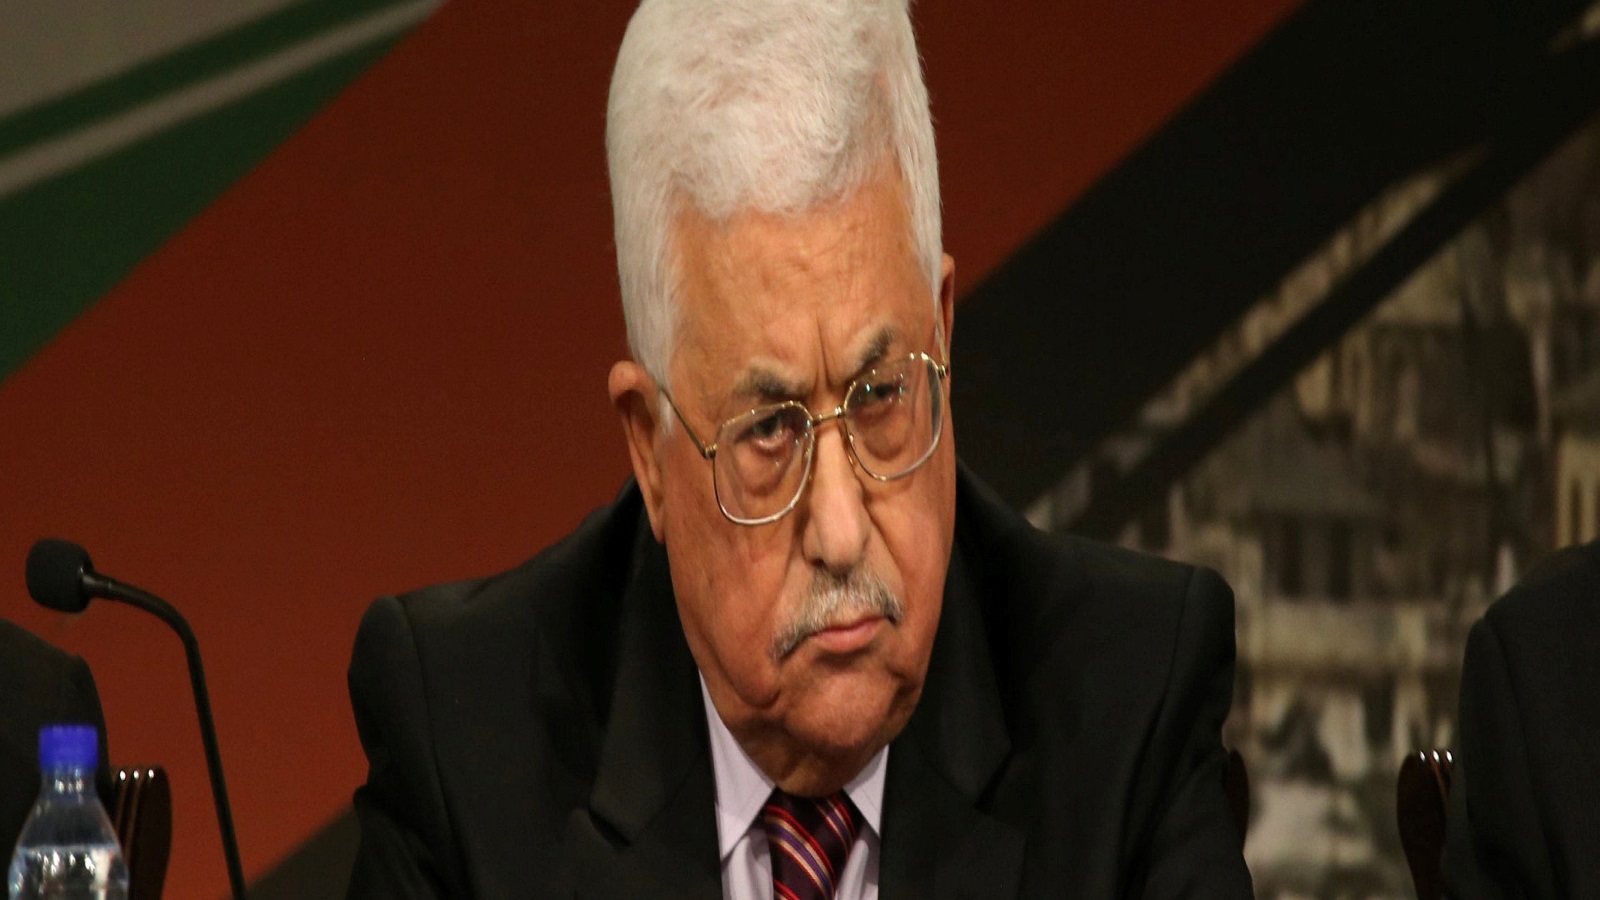 ‪التحضيرات المصرية الإماراتية الإسرائيلية تضع عباس في مأزق‬ التحضيرات المصرية الإماراتية الإسرائيلية تضع عباس في مأزق (رويترزـأرشيف)